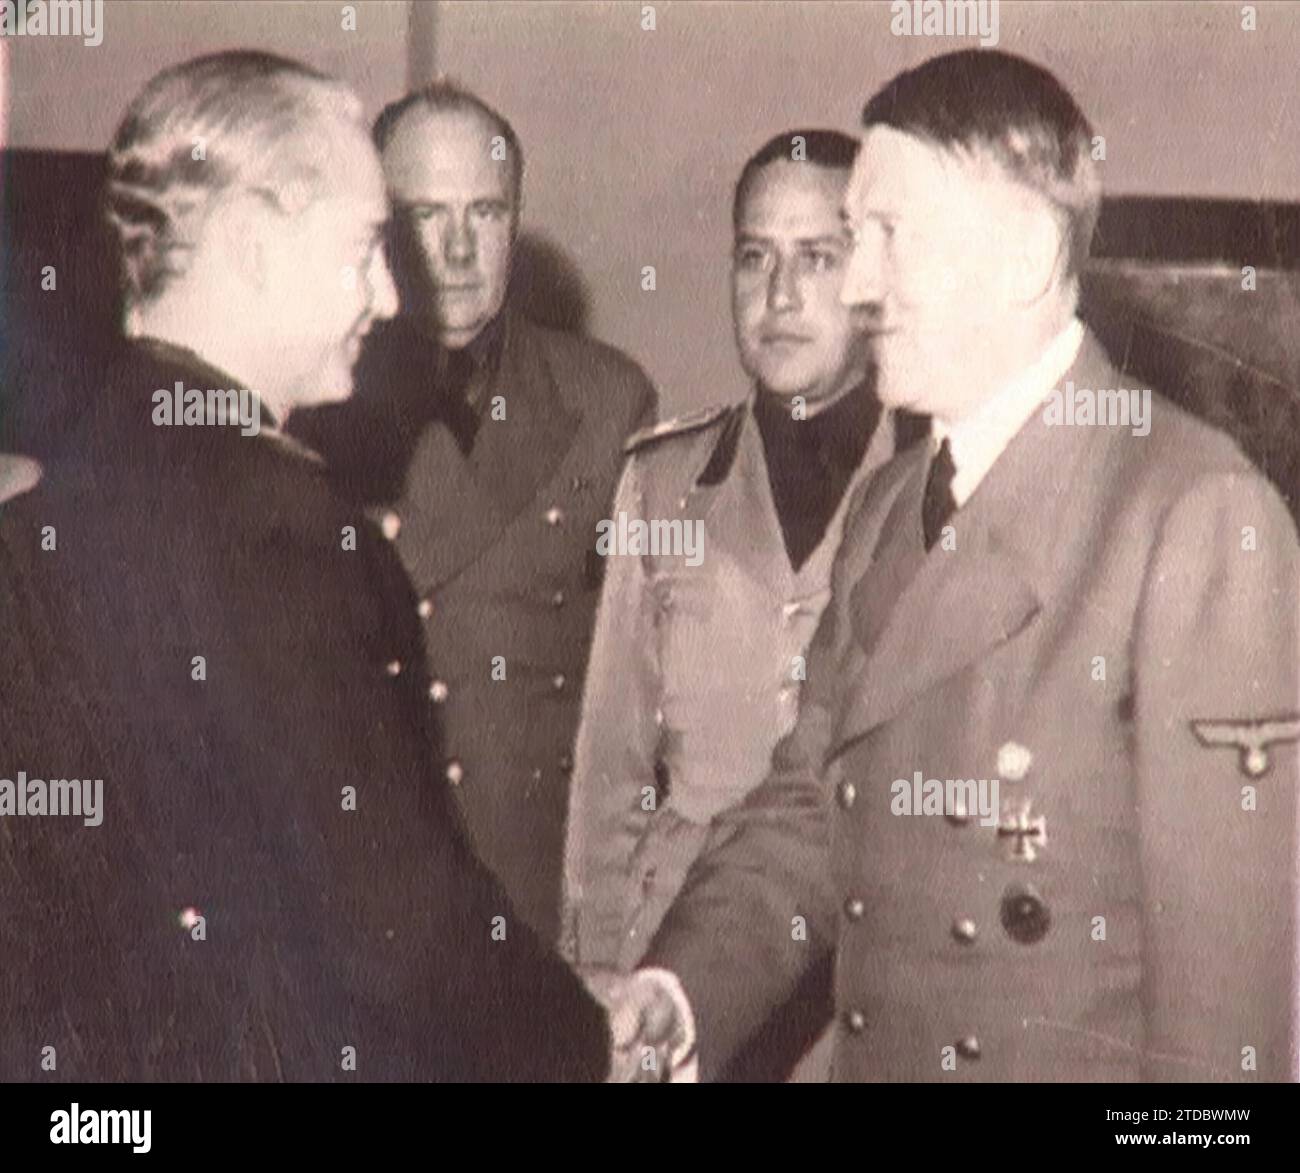 Berlin (Deutschland), September 1940. Ramón Serrano Suñer trifft sich mit Adolf Hitler. Im Bild die Begrüßung zwischen den beiden, in Anwesenheit von Graf Ciano. Quelle: Album/Archivo ABC Stockfoto